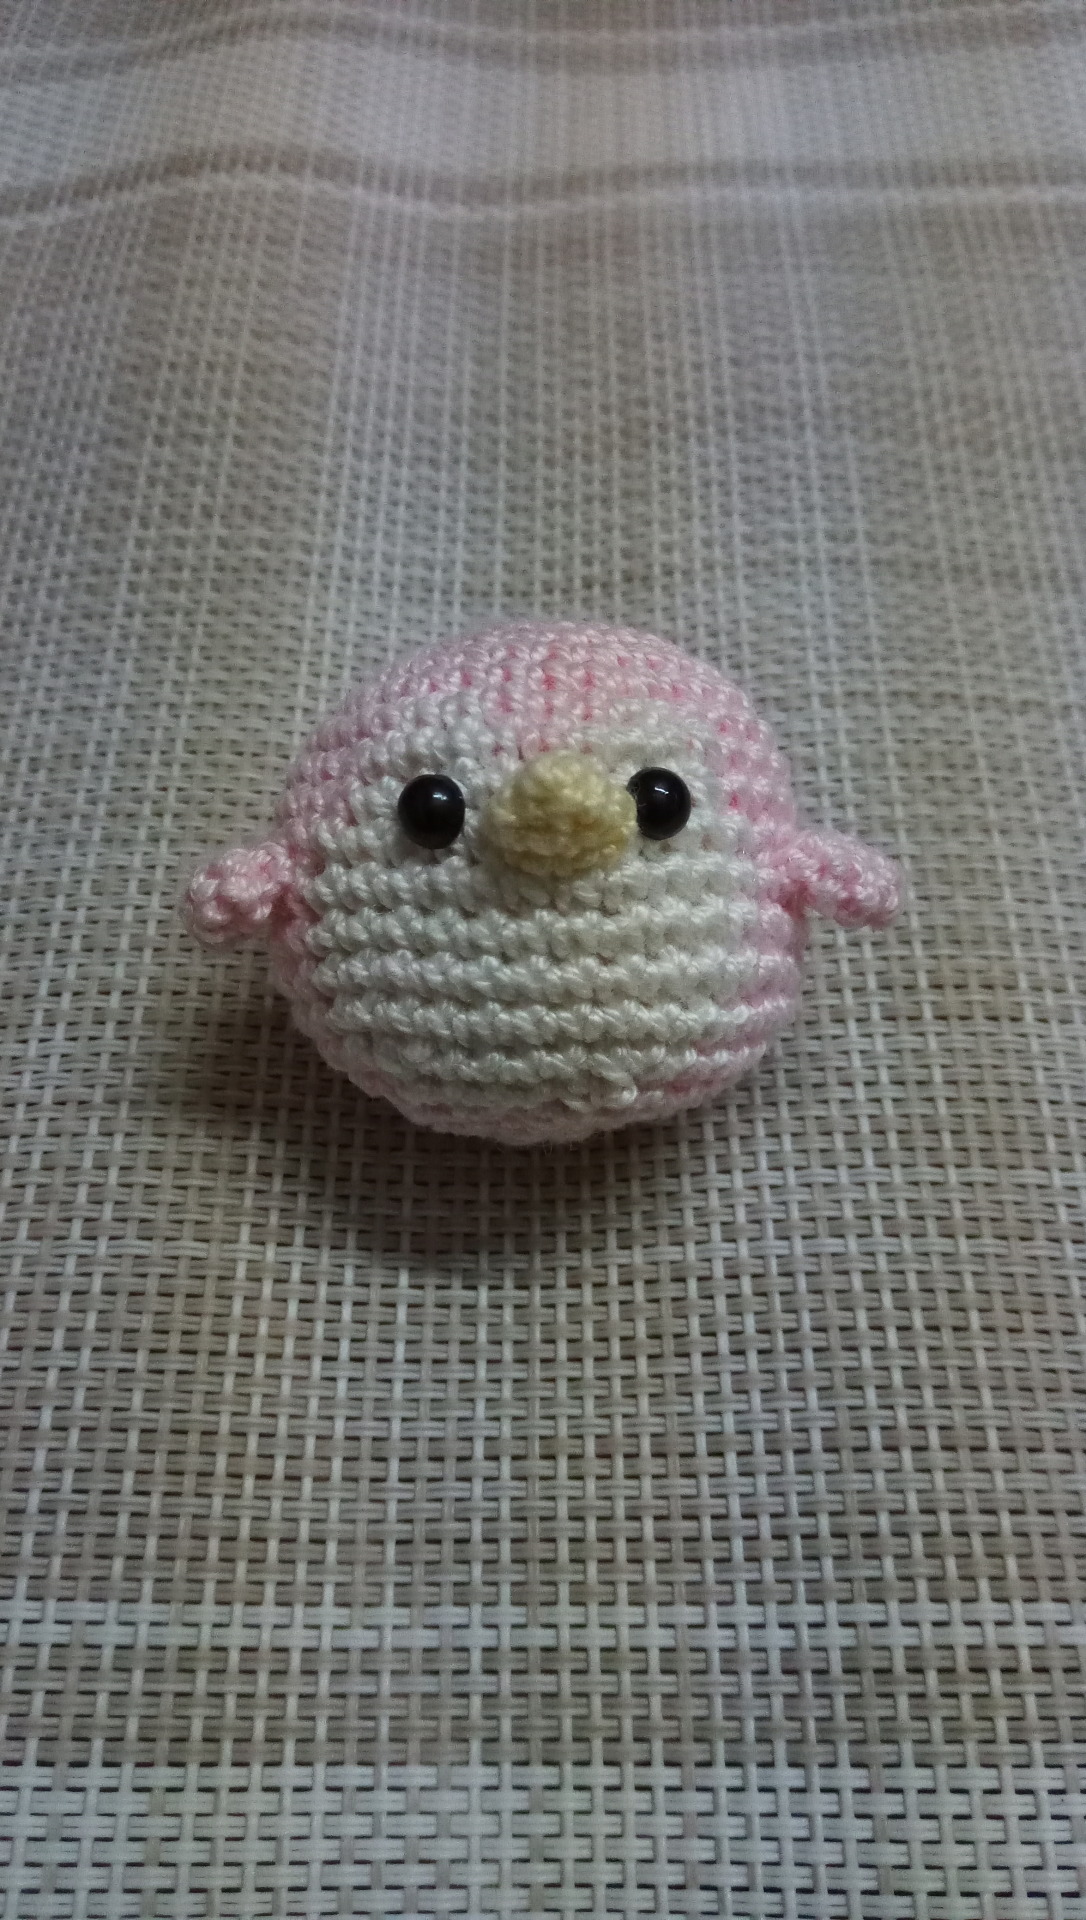 Crocheted this little Impkin : r/crochet